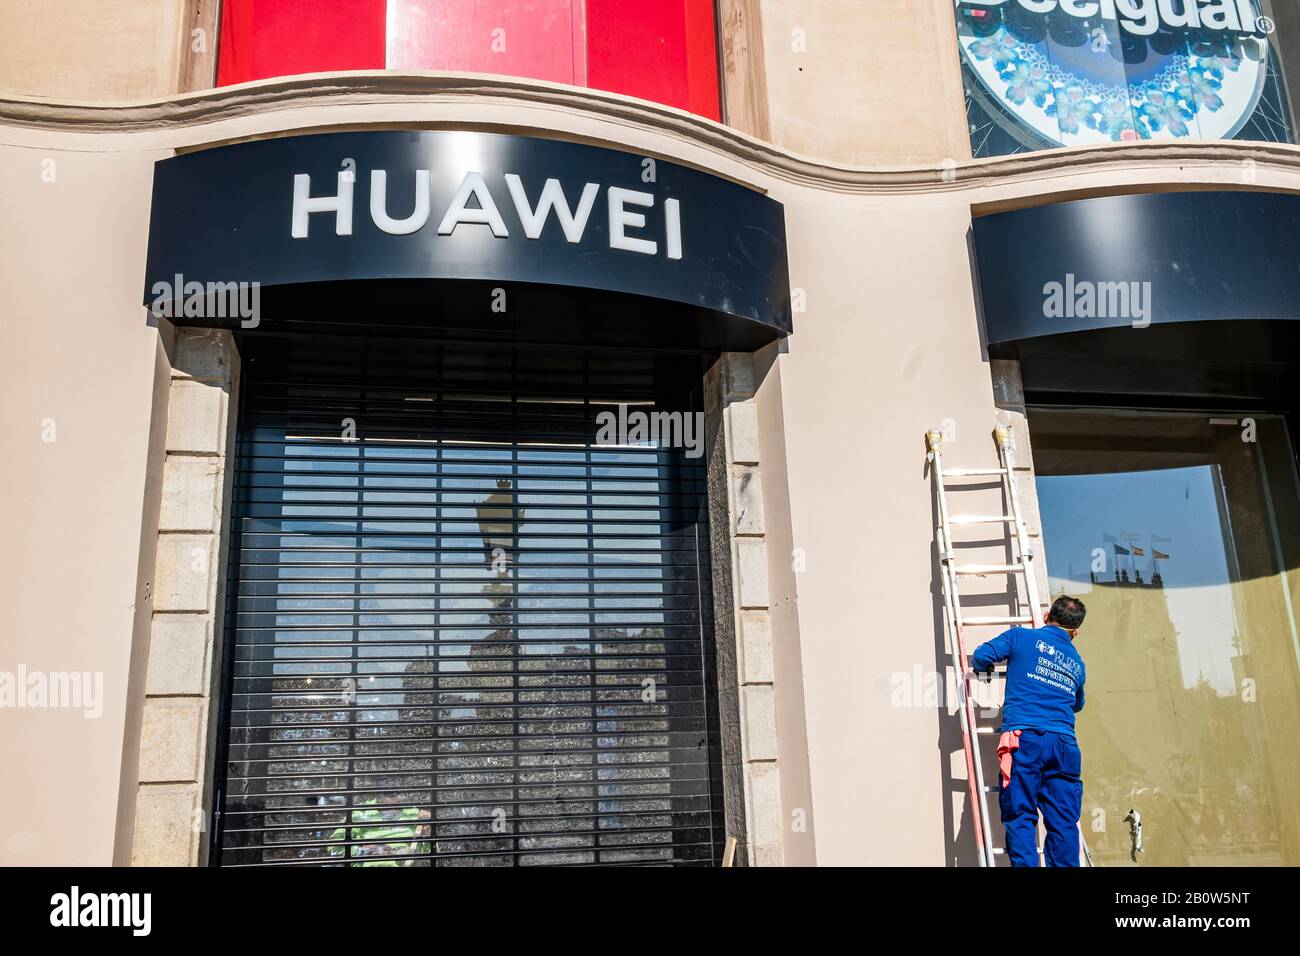 Barcelona, España. 21 de febrero de 2020. Operadores industriales que  terminan por última vez en la fachada de la nueva tienda Huawei Barcelona.  La multinacional China Huawei abre el Huawei Space Barcelona,